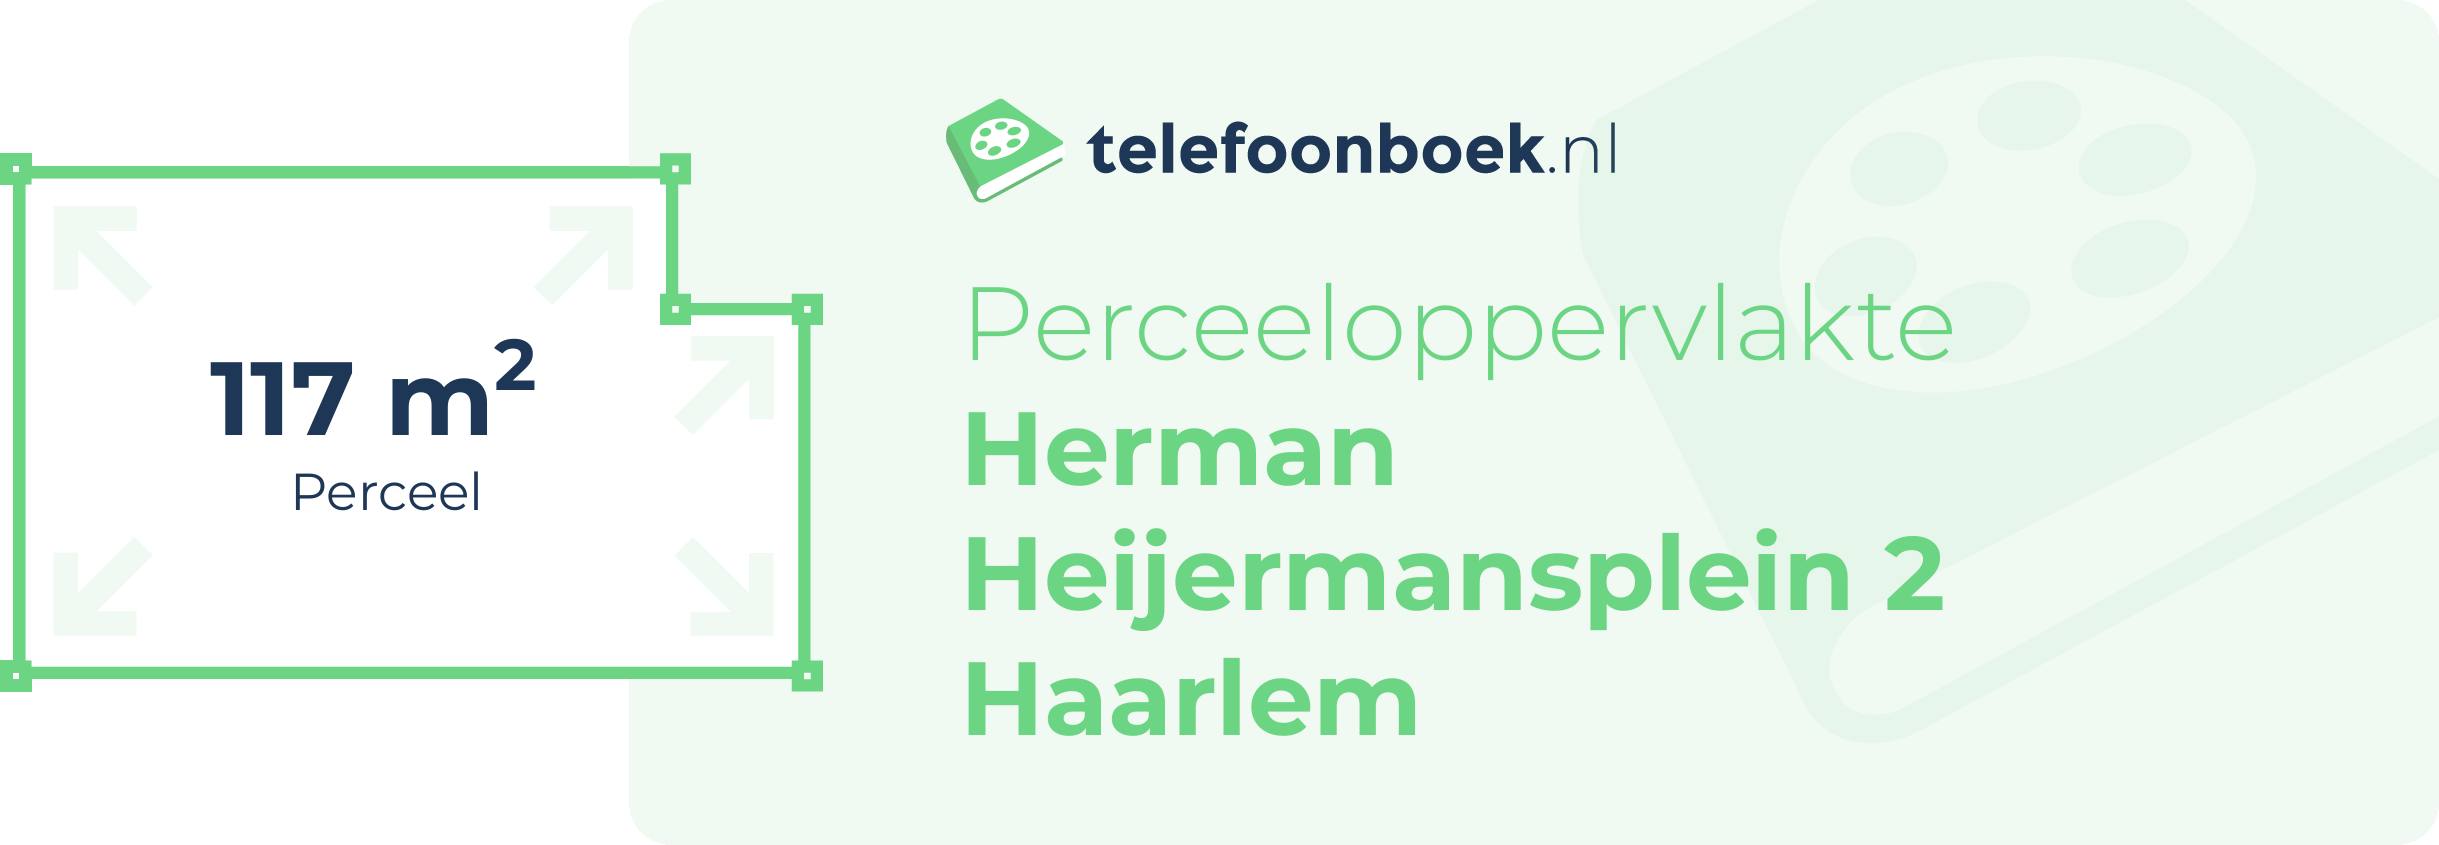 Perceeloppervlakte Herman Heijermansplein 2 Haarlem